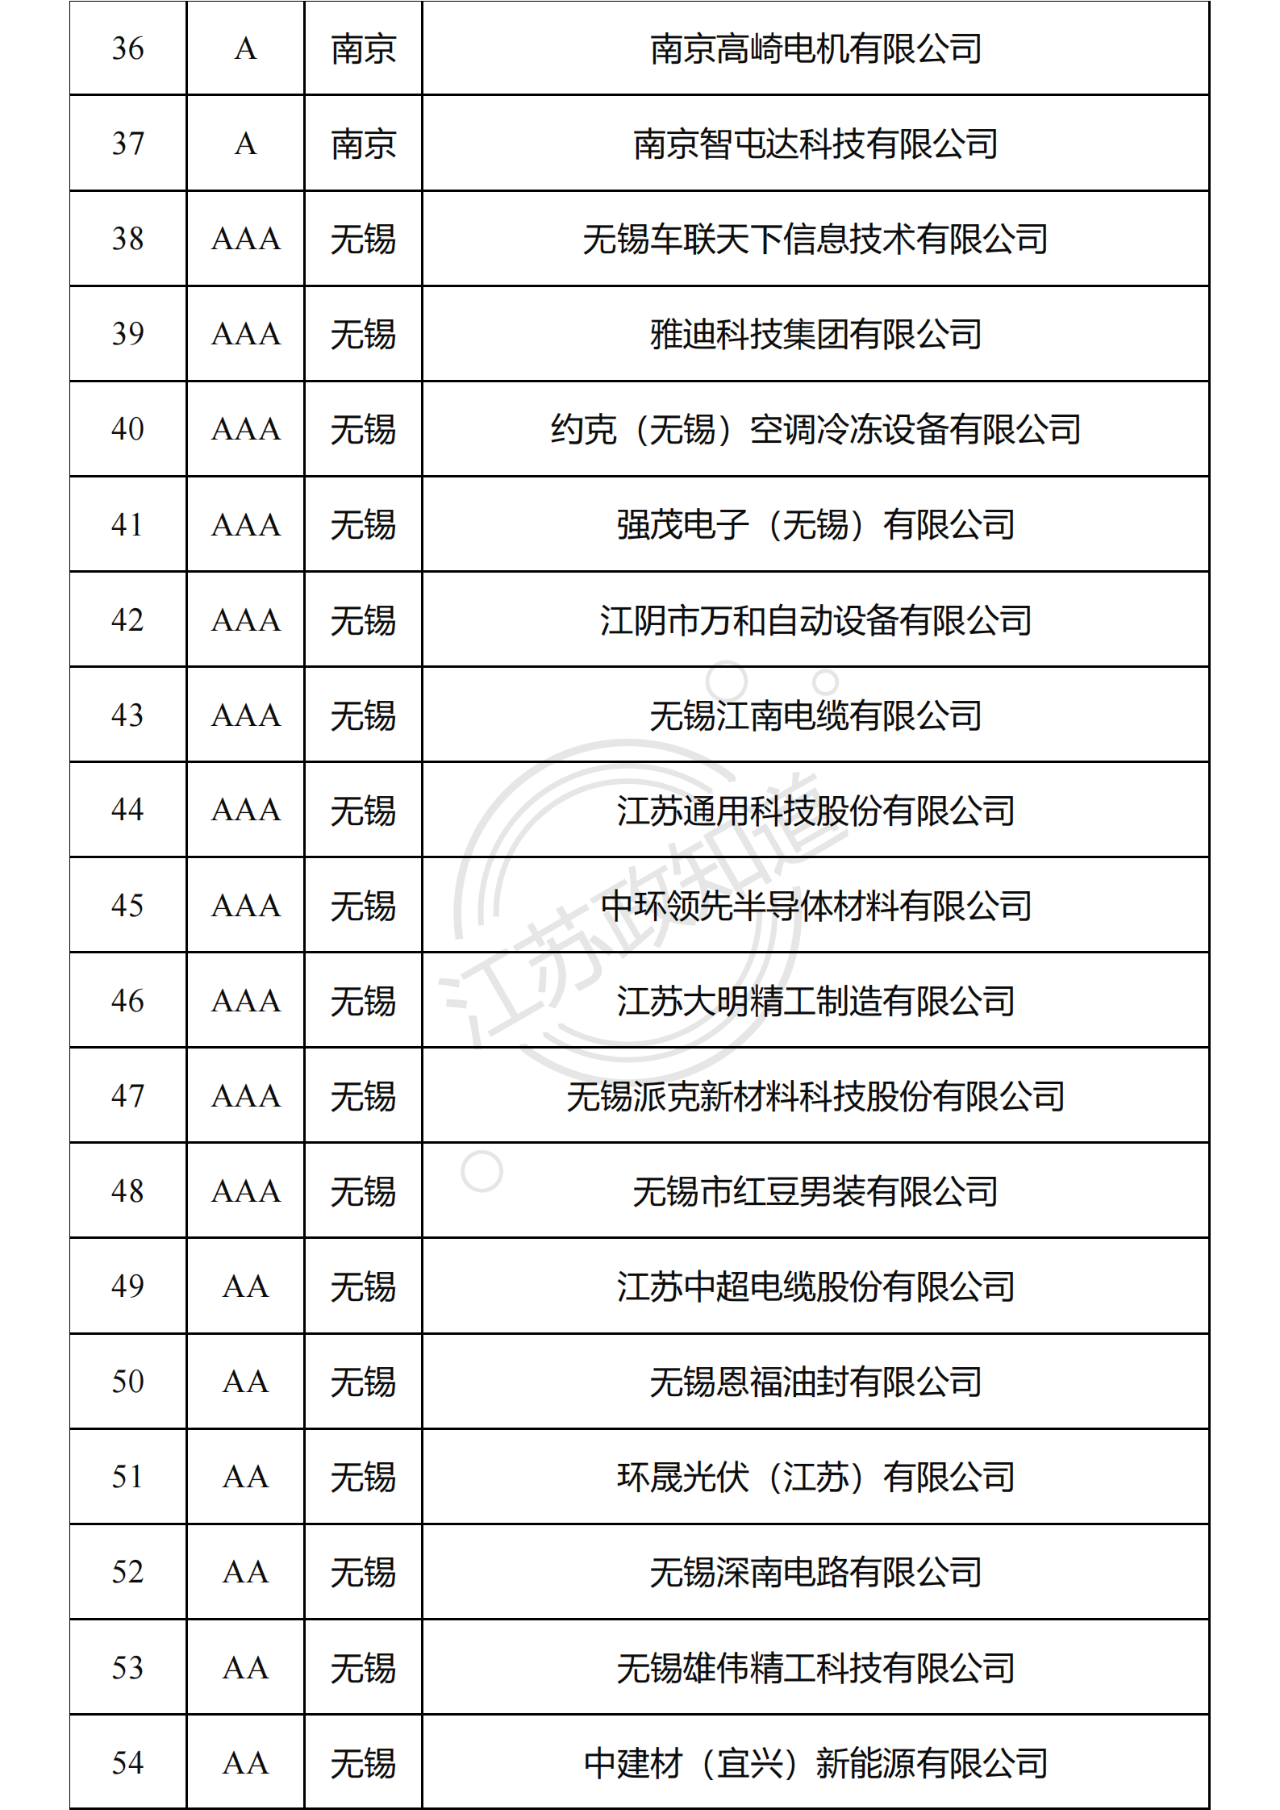 2022年度江苏省两化融合管理体系贯标试点企业培育对象拟认定名单3.png